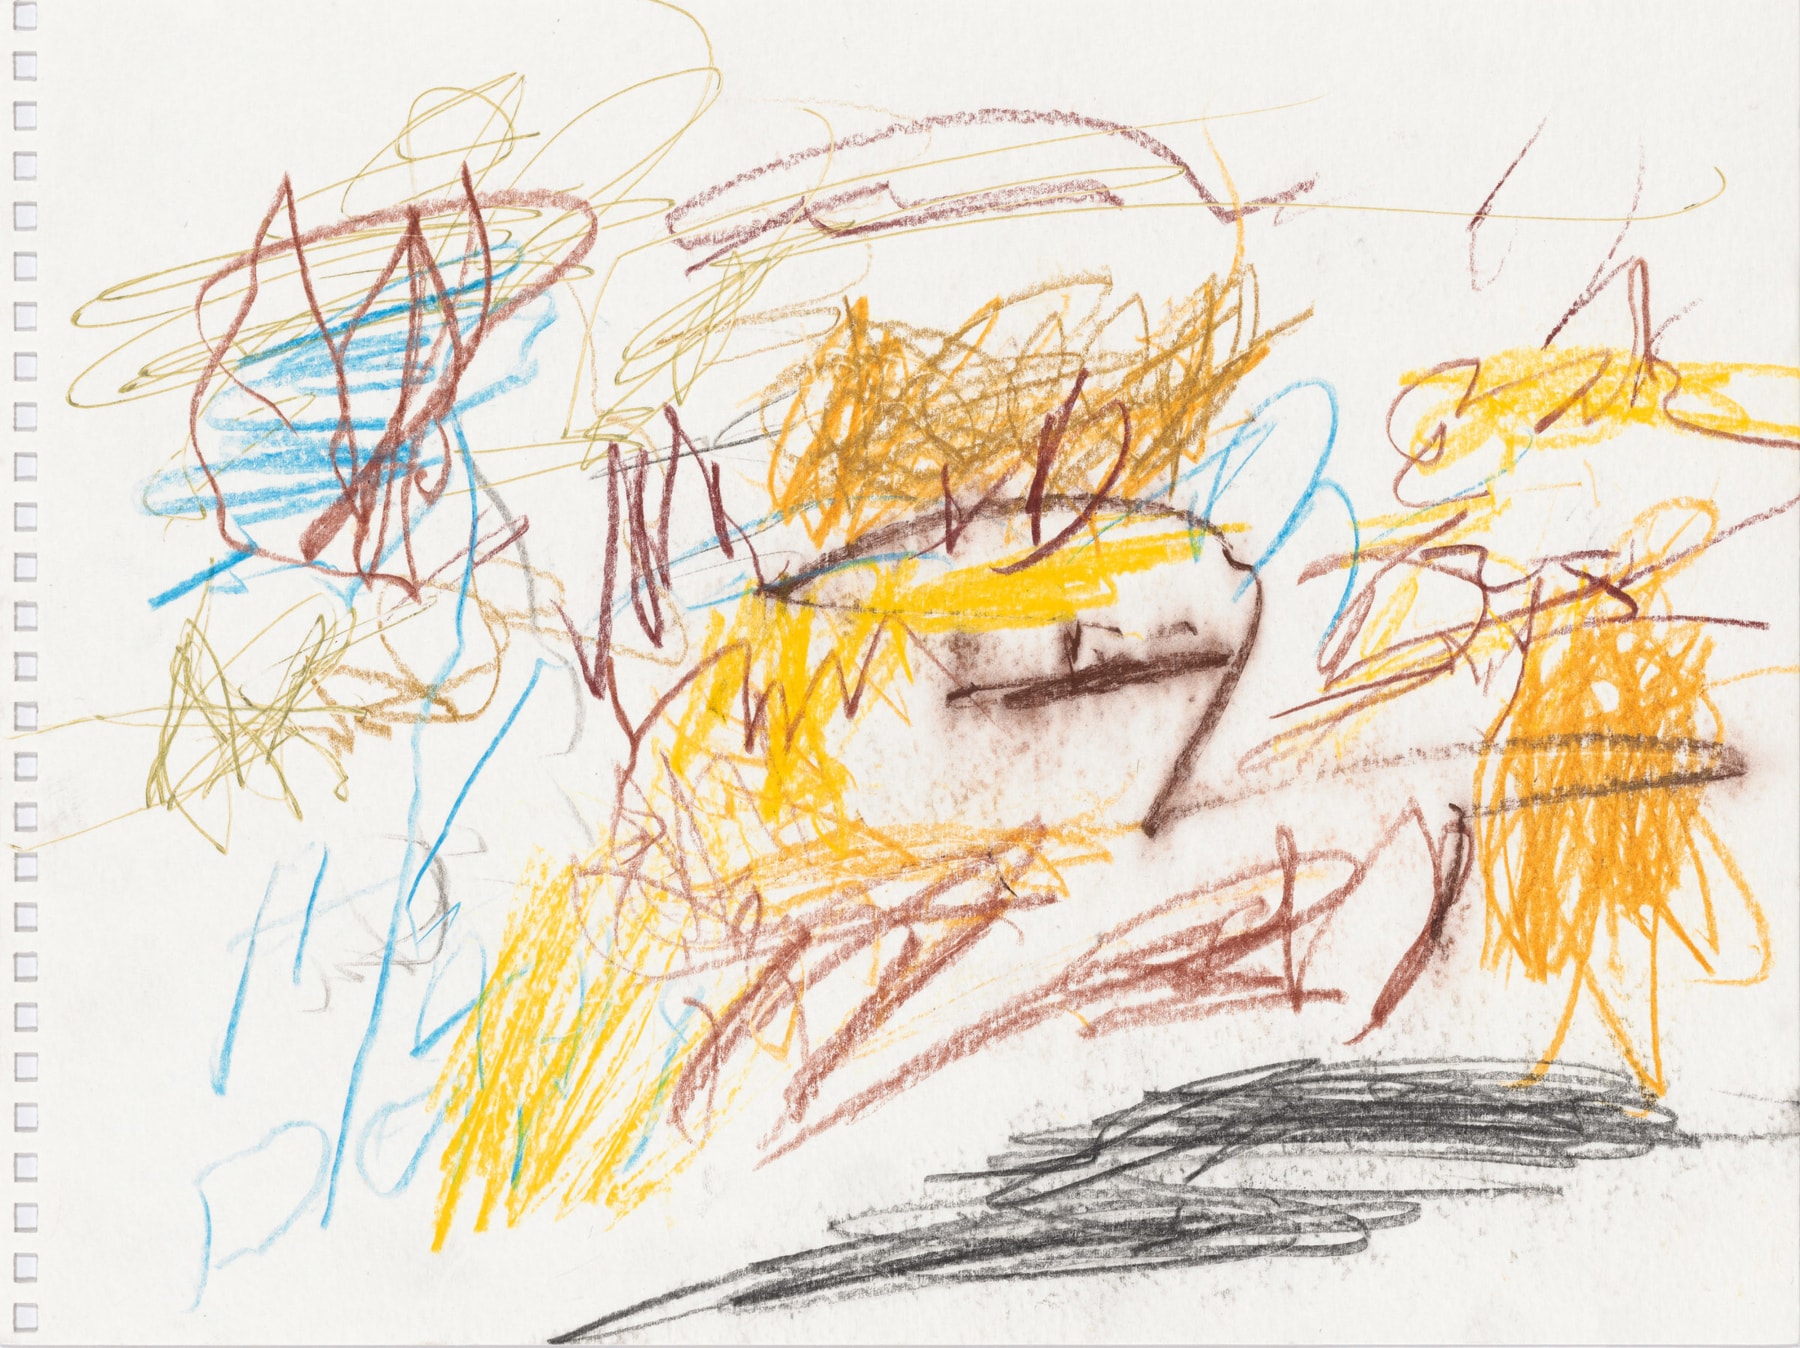 Don Van Vliet
&amp;quot;Untitled&amp;quot;, 1999
Colored pencil, pen on paper
9 x 12 inches
23 x 30.5 cm
VLZ 610